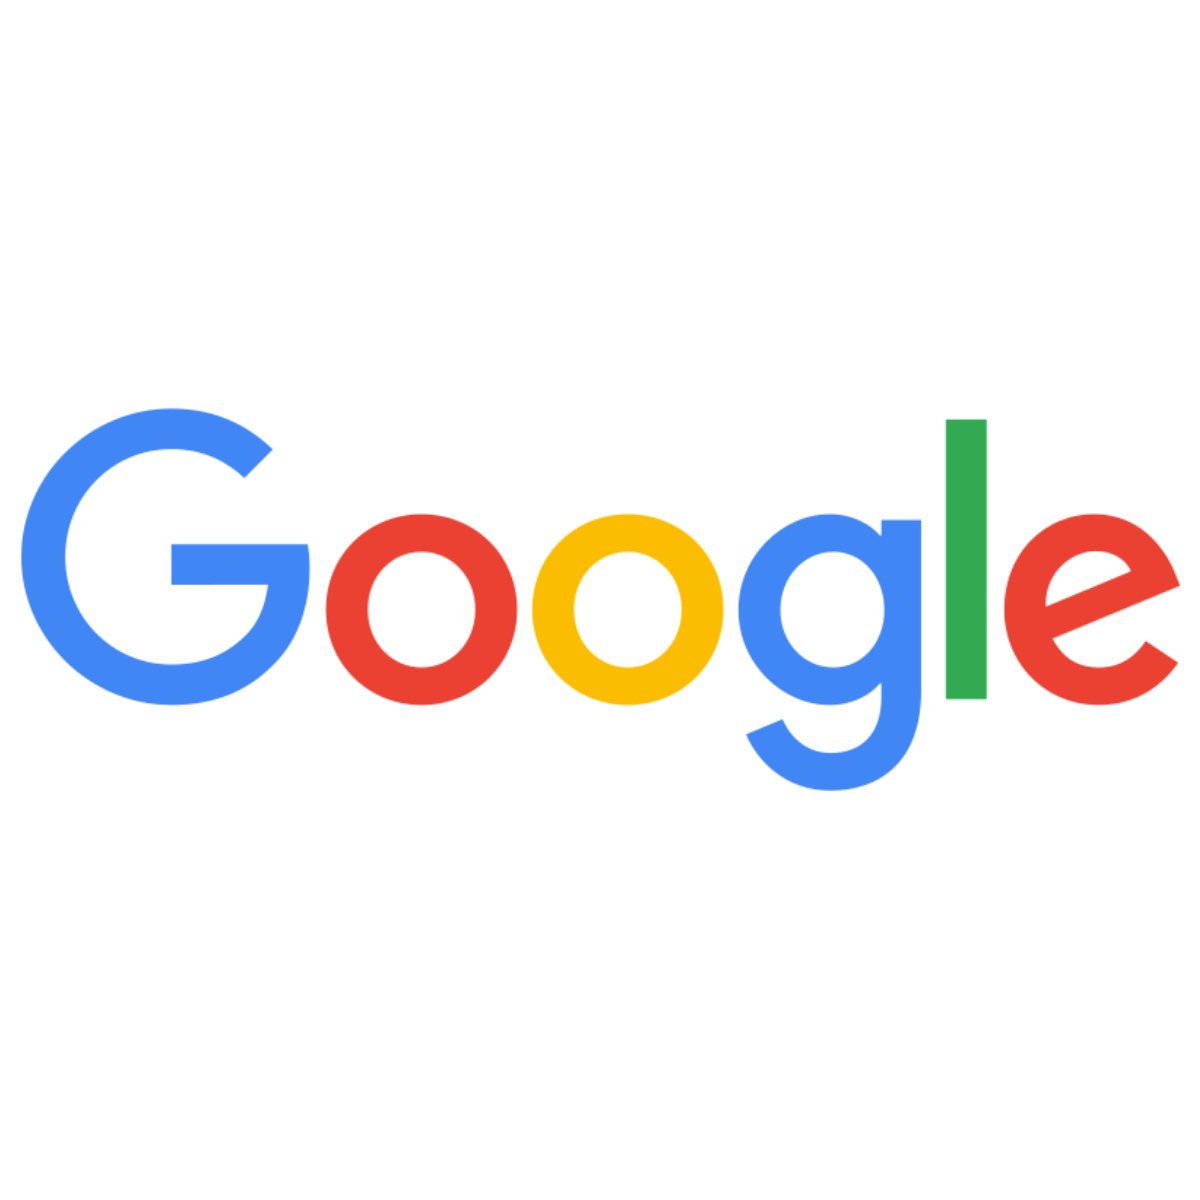 GoogleSQ.jpg